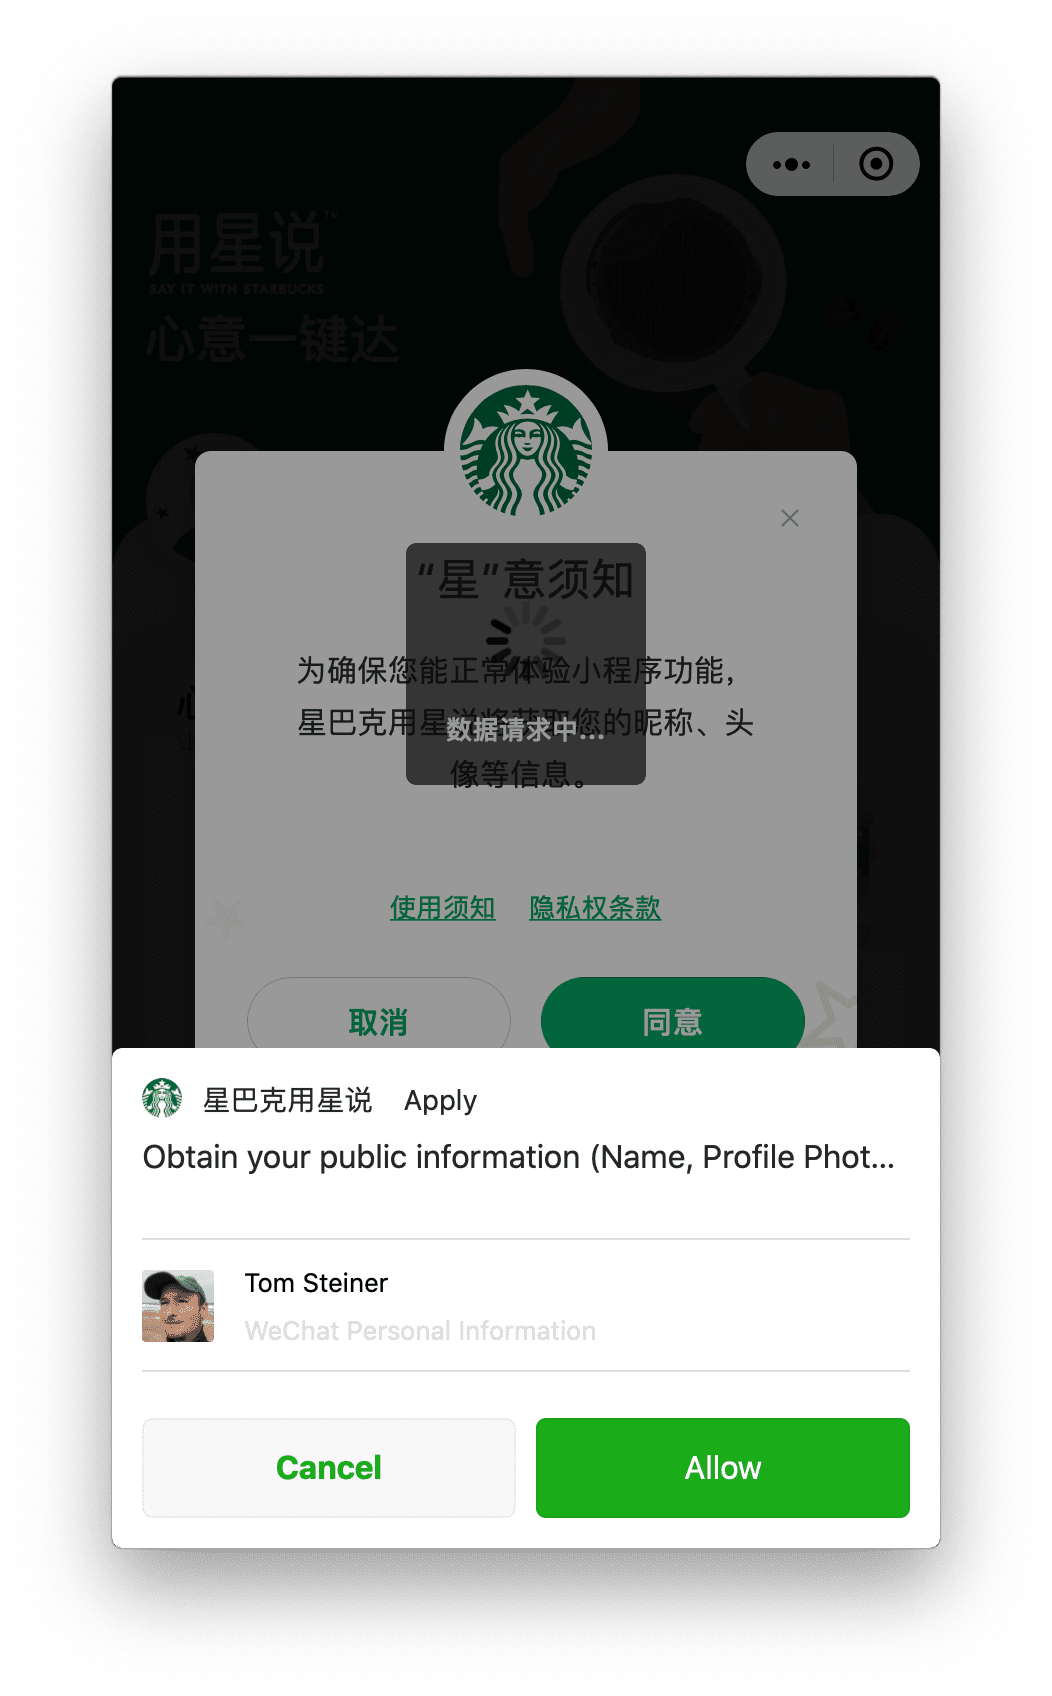 Die Starbucks-Mini-App unter macOS fordert die Berechtigung für das Nutzerprofil an, die der Nutzer über eine unten angezeigte Aufforderung erteilen kann.